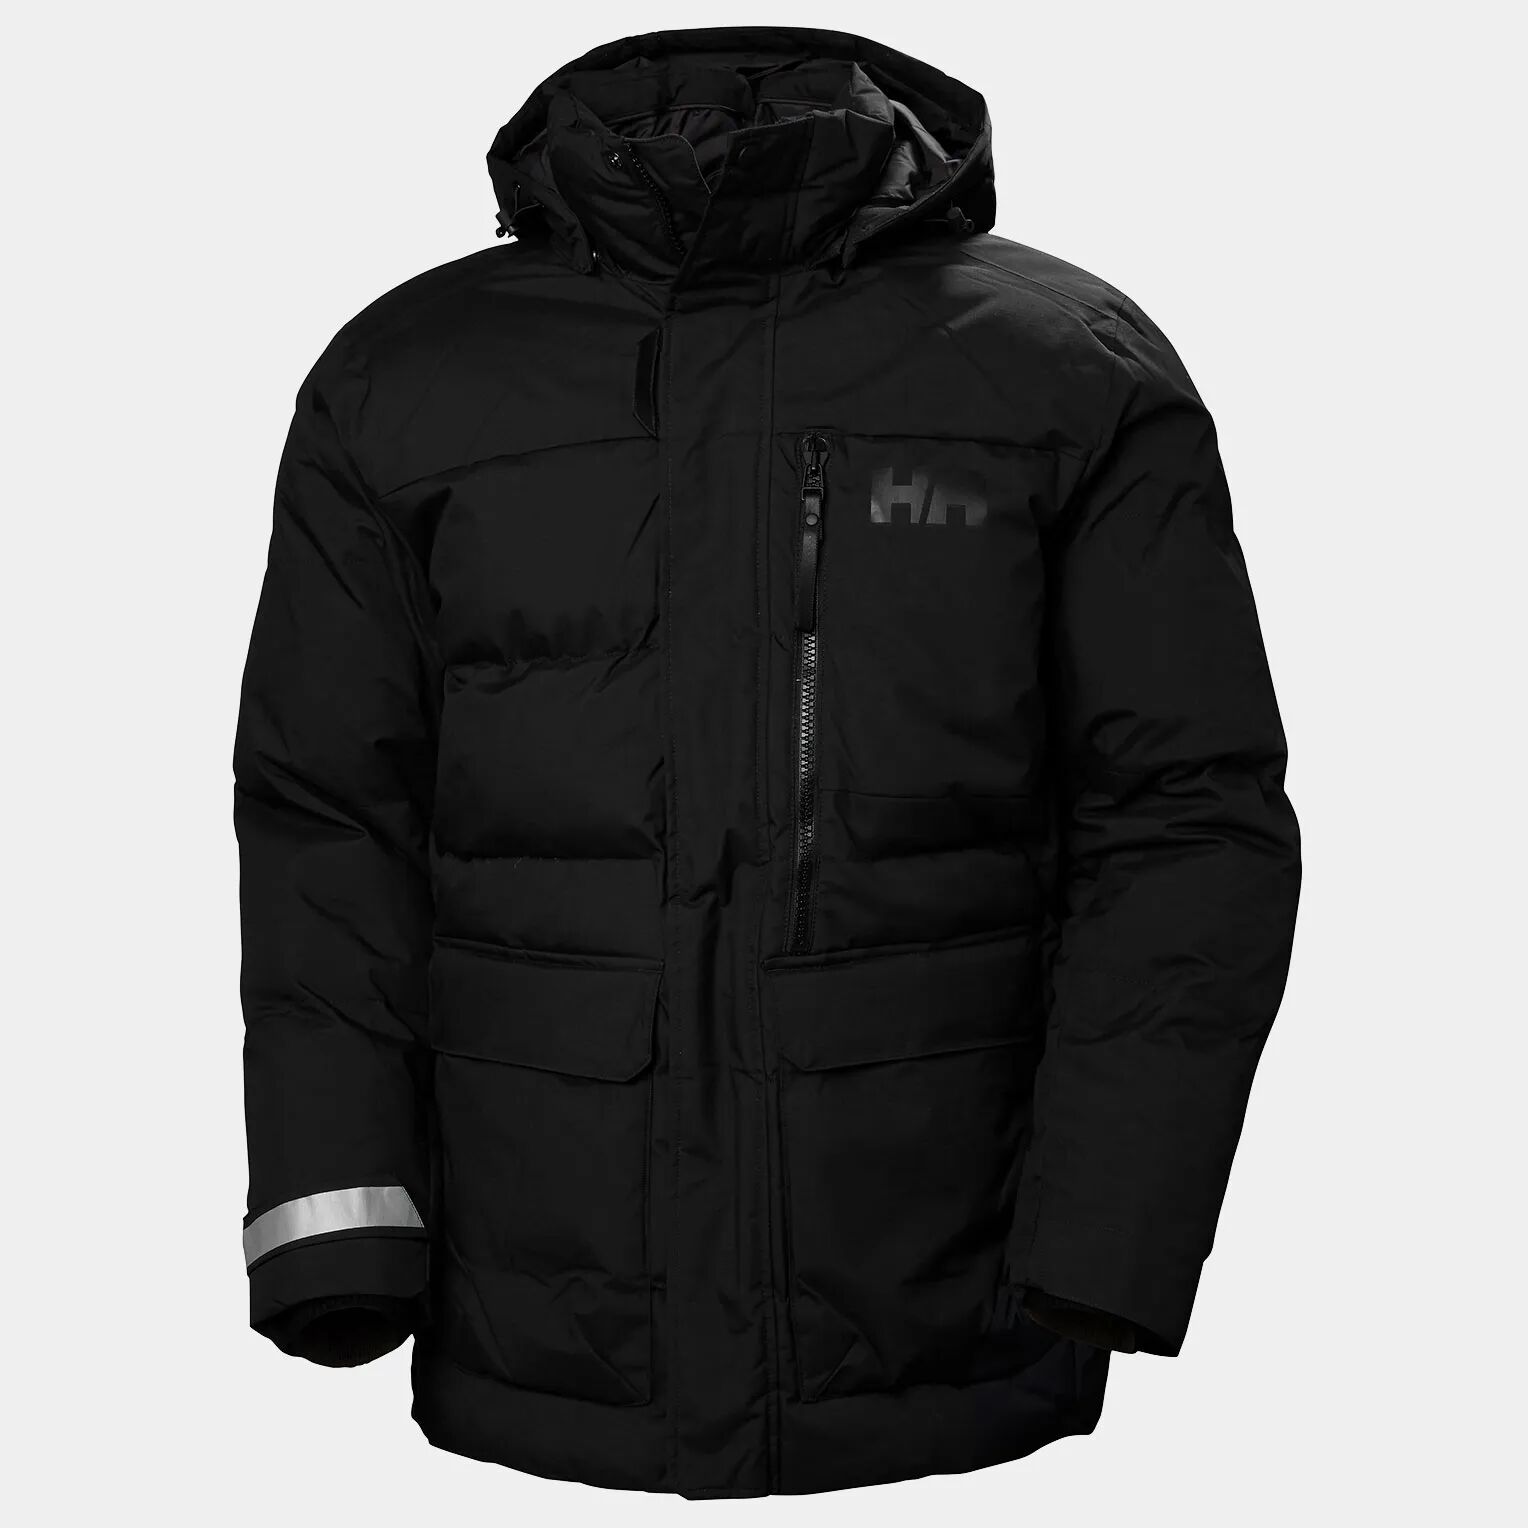 Helly Hansen Men's Tromsoe Hooded Winter Jacket Black 2XL